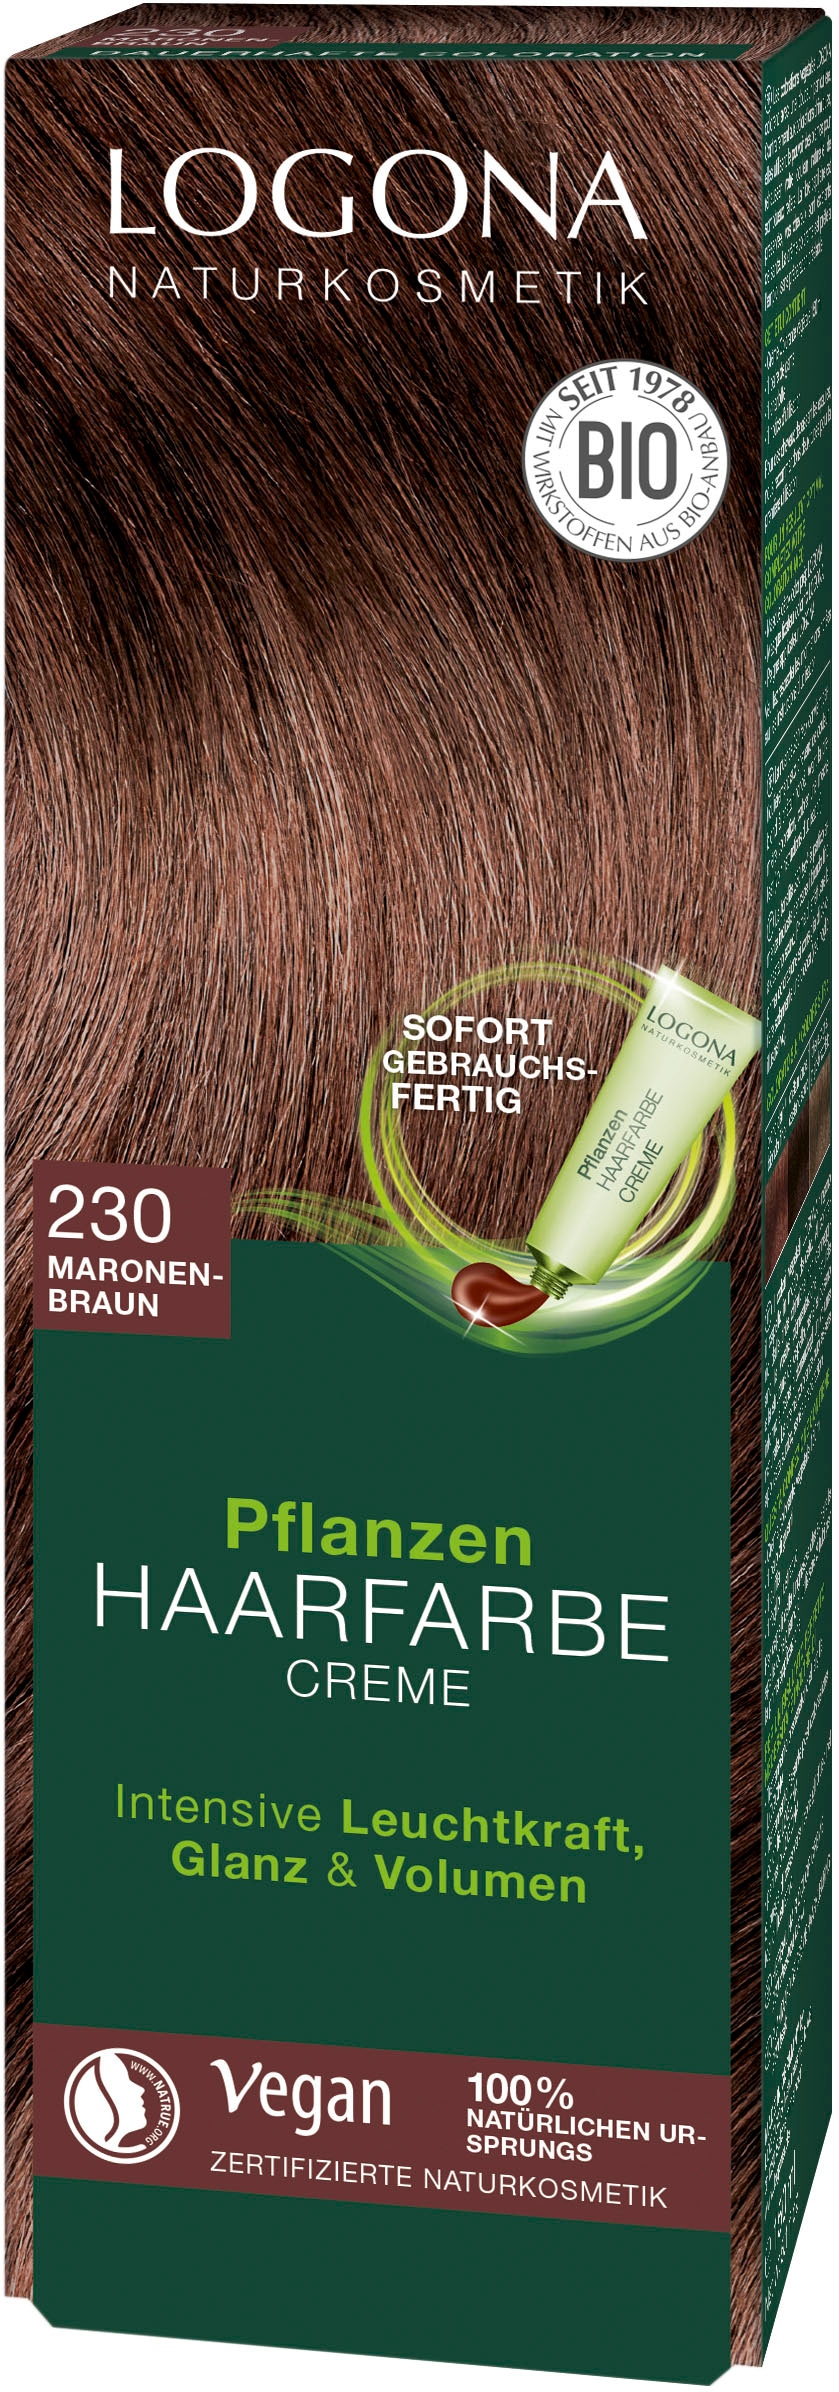 Jahren Haarfarbe XXL mit LOGONA Creme« Pflanzen-Haarfarbe 3 Garantie »Logona